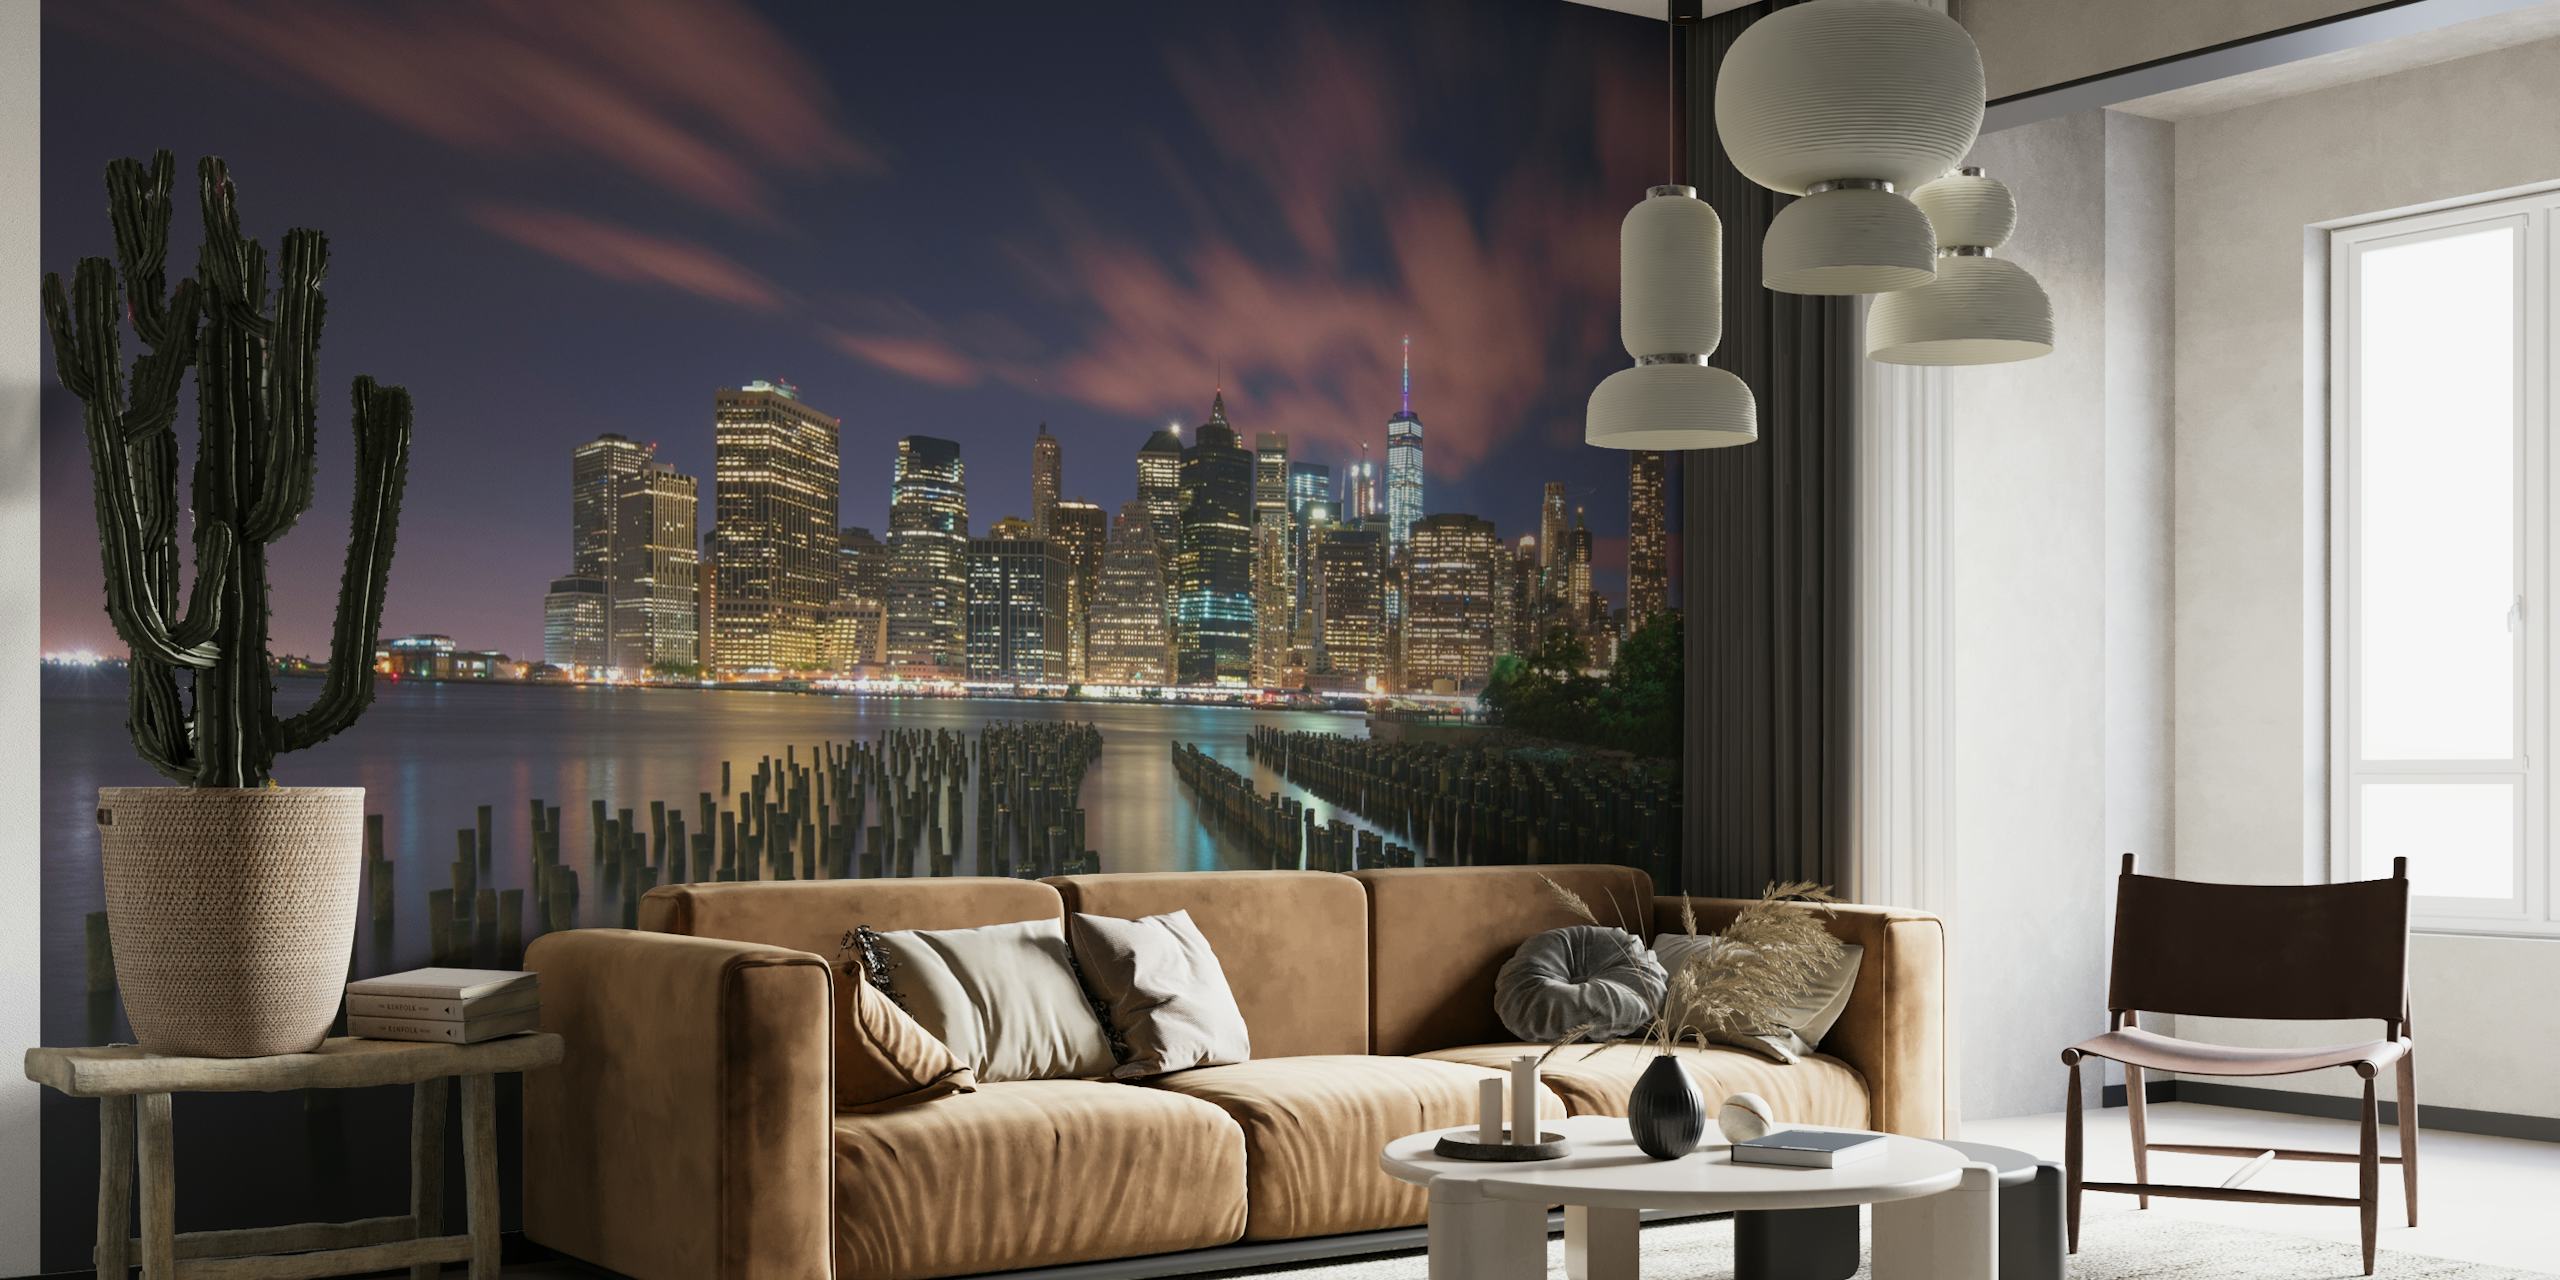 Skyline von New York City mit hellen Lichtern, die sich nachts im Wasser spiegeln